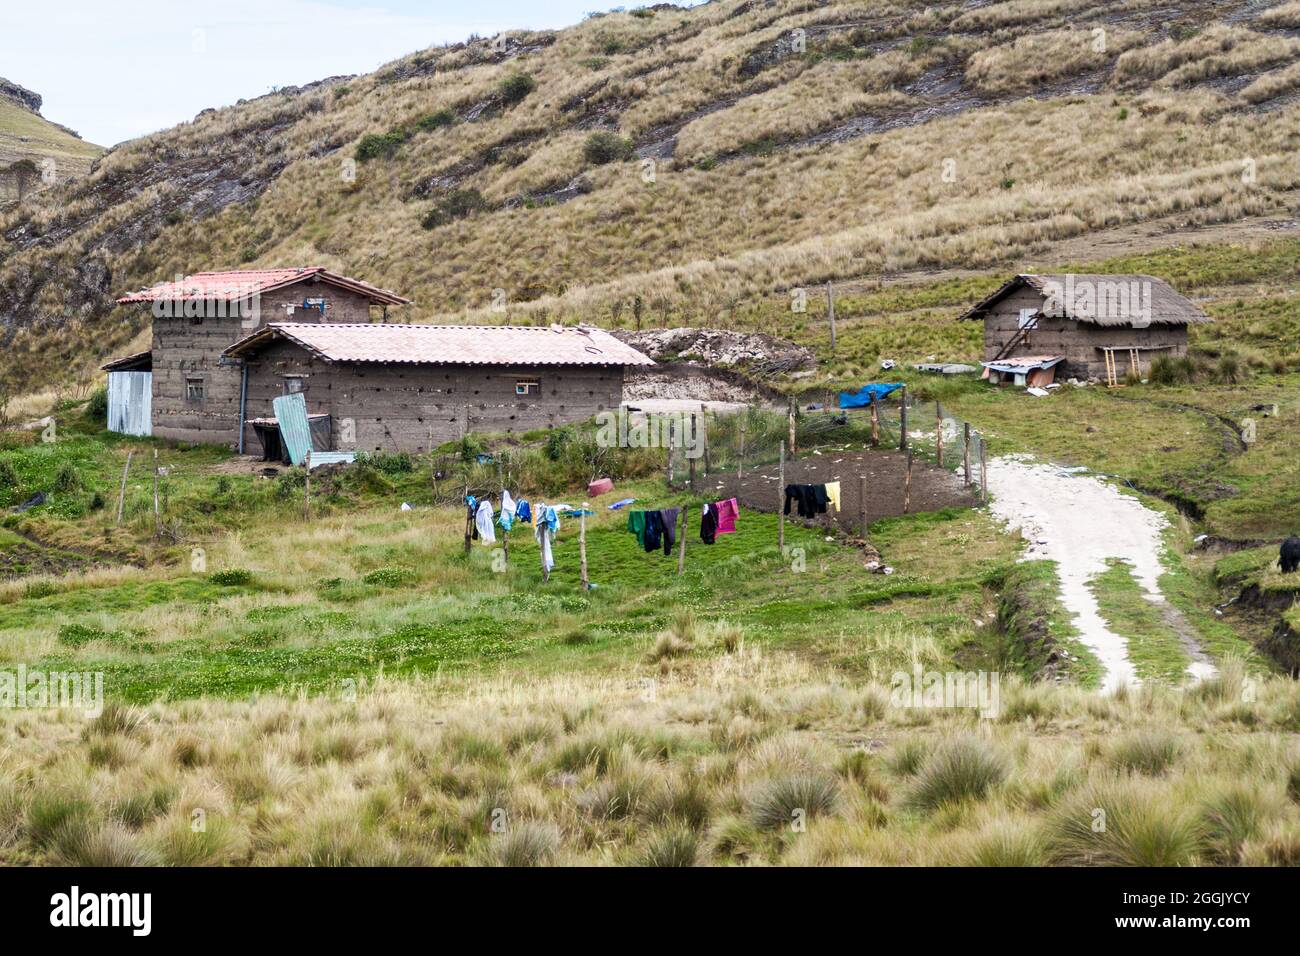 Piccolo insediamento rurale vicino a Los Frailones (Monaci di pietra), formazioni rocciose vicino Cajamarca, Perù. Foto Stock